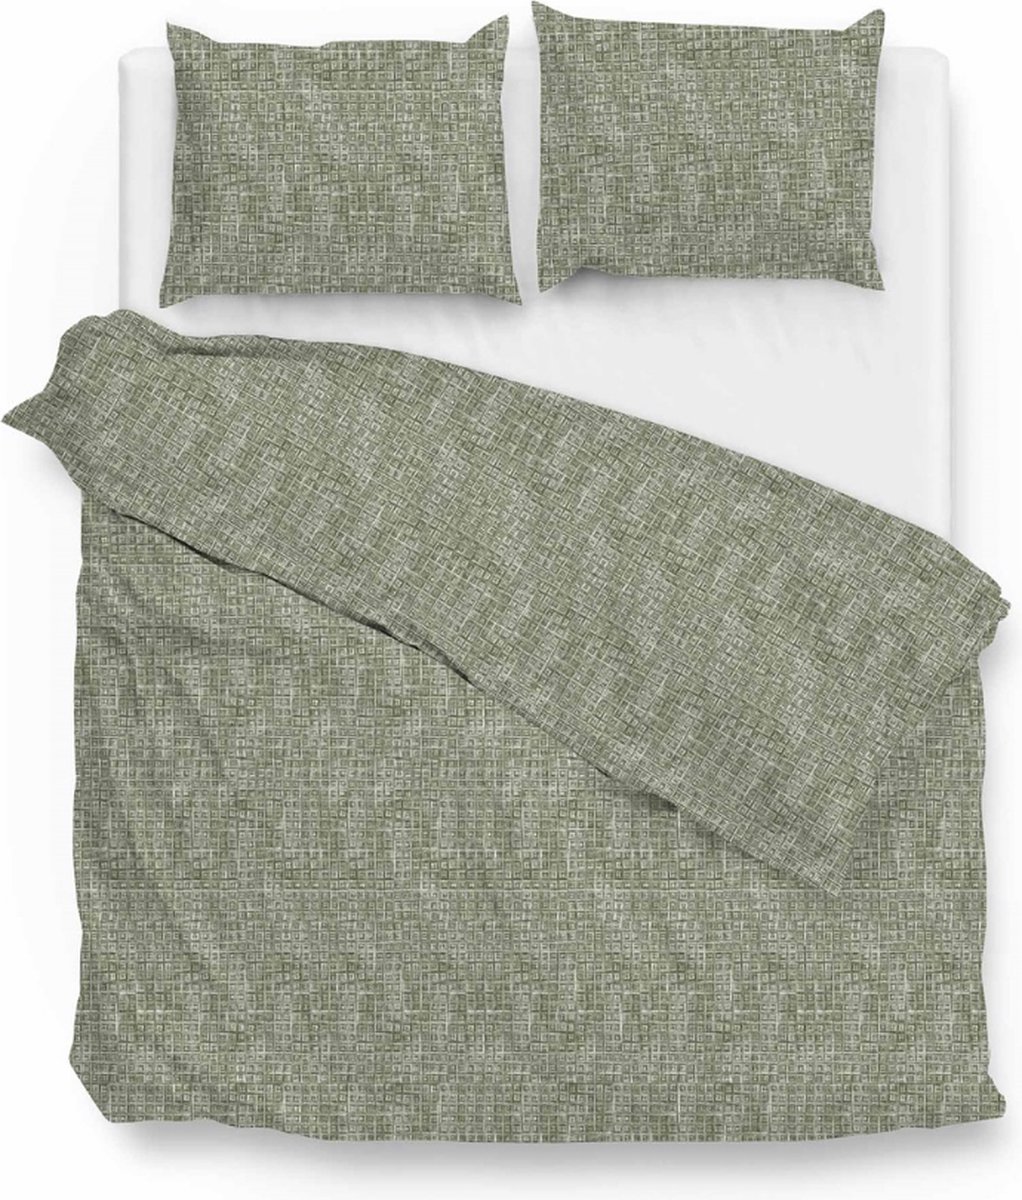 Warme flanel dekbedovertrek Devano groen - lits-jumeaux (240x200/220) - hoogwaardig en zacht - ideaal tegen de kou